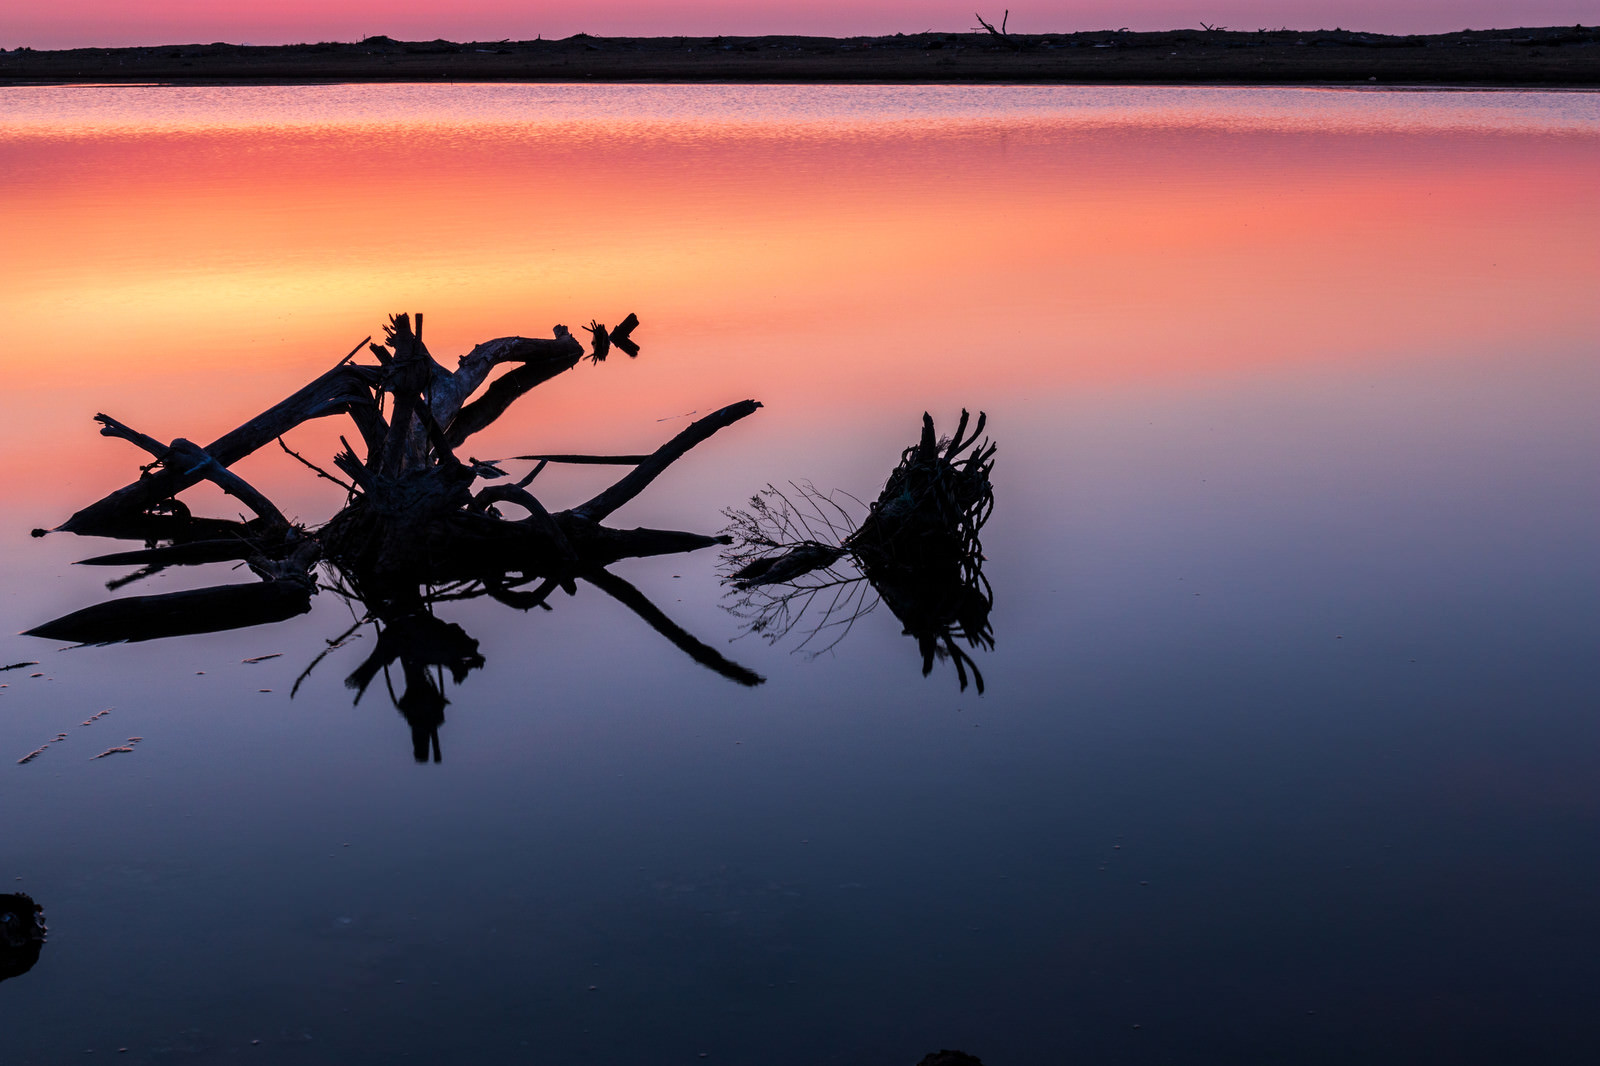 「蒲生干潟の夜明けと朝焼けの水面 | フリー素材のぱくたそ」の写真